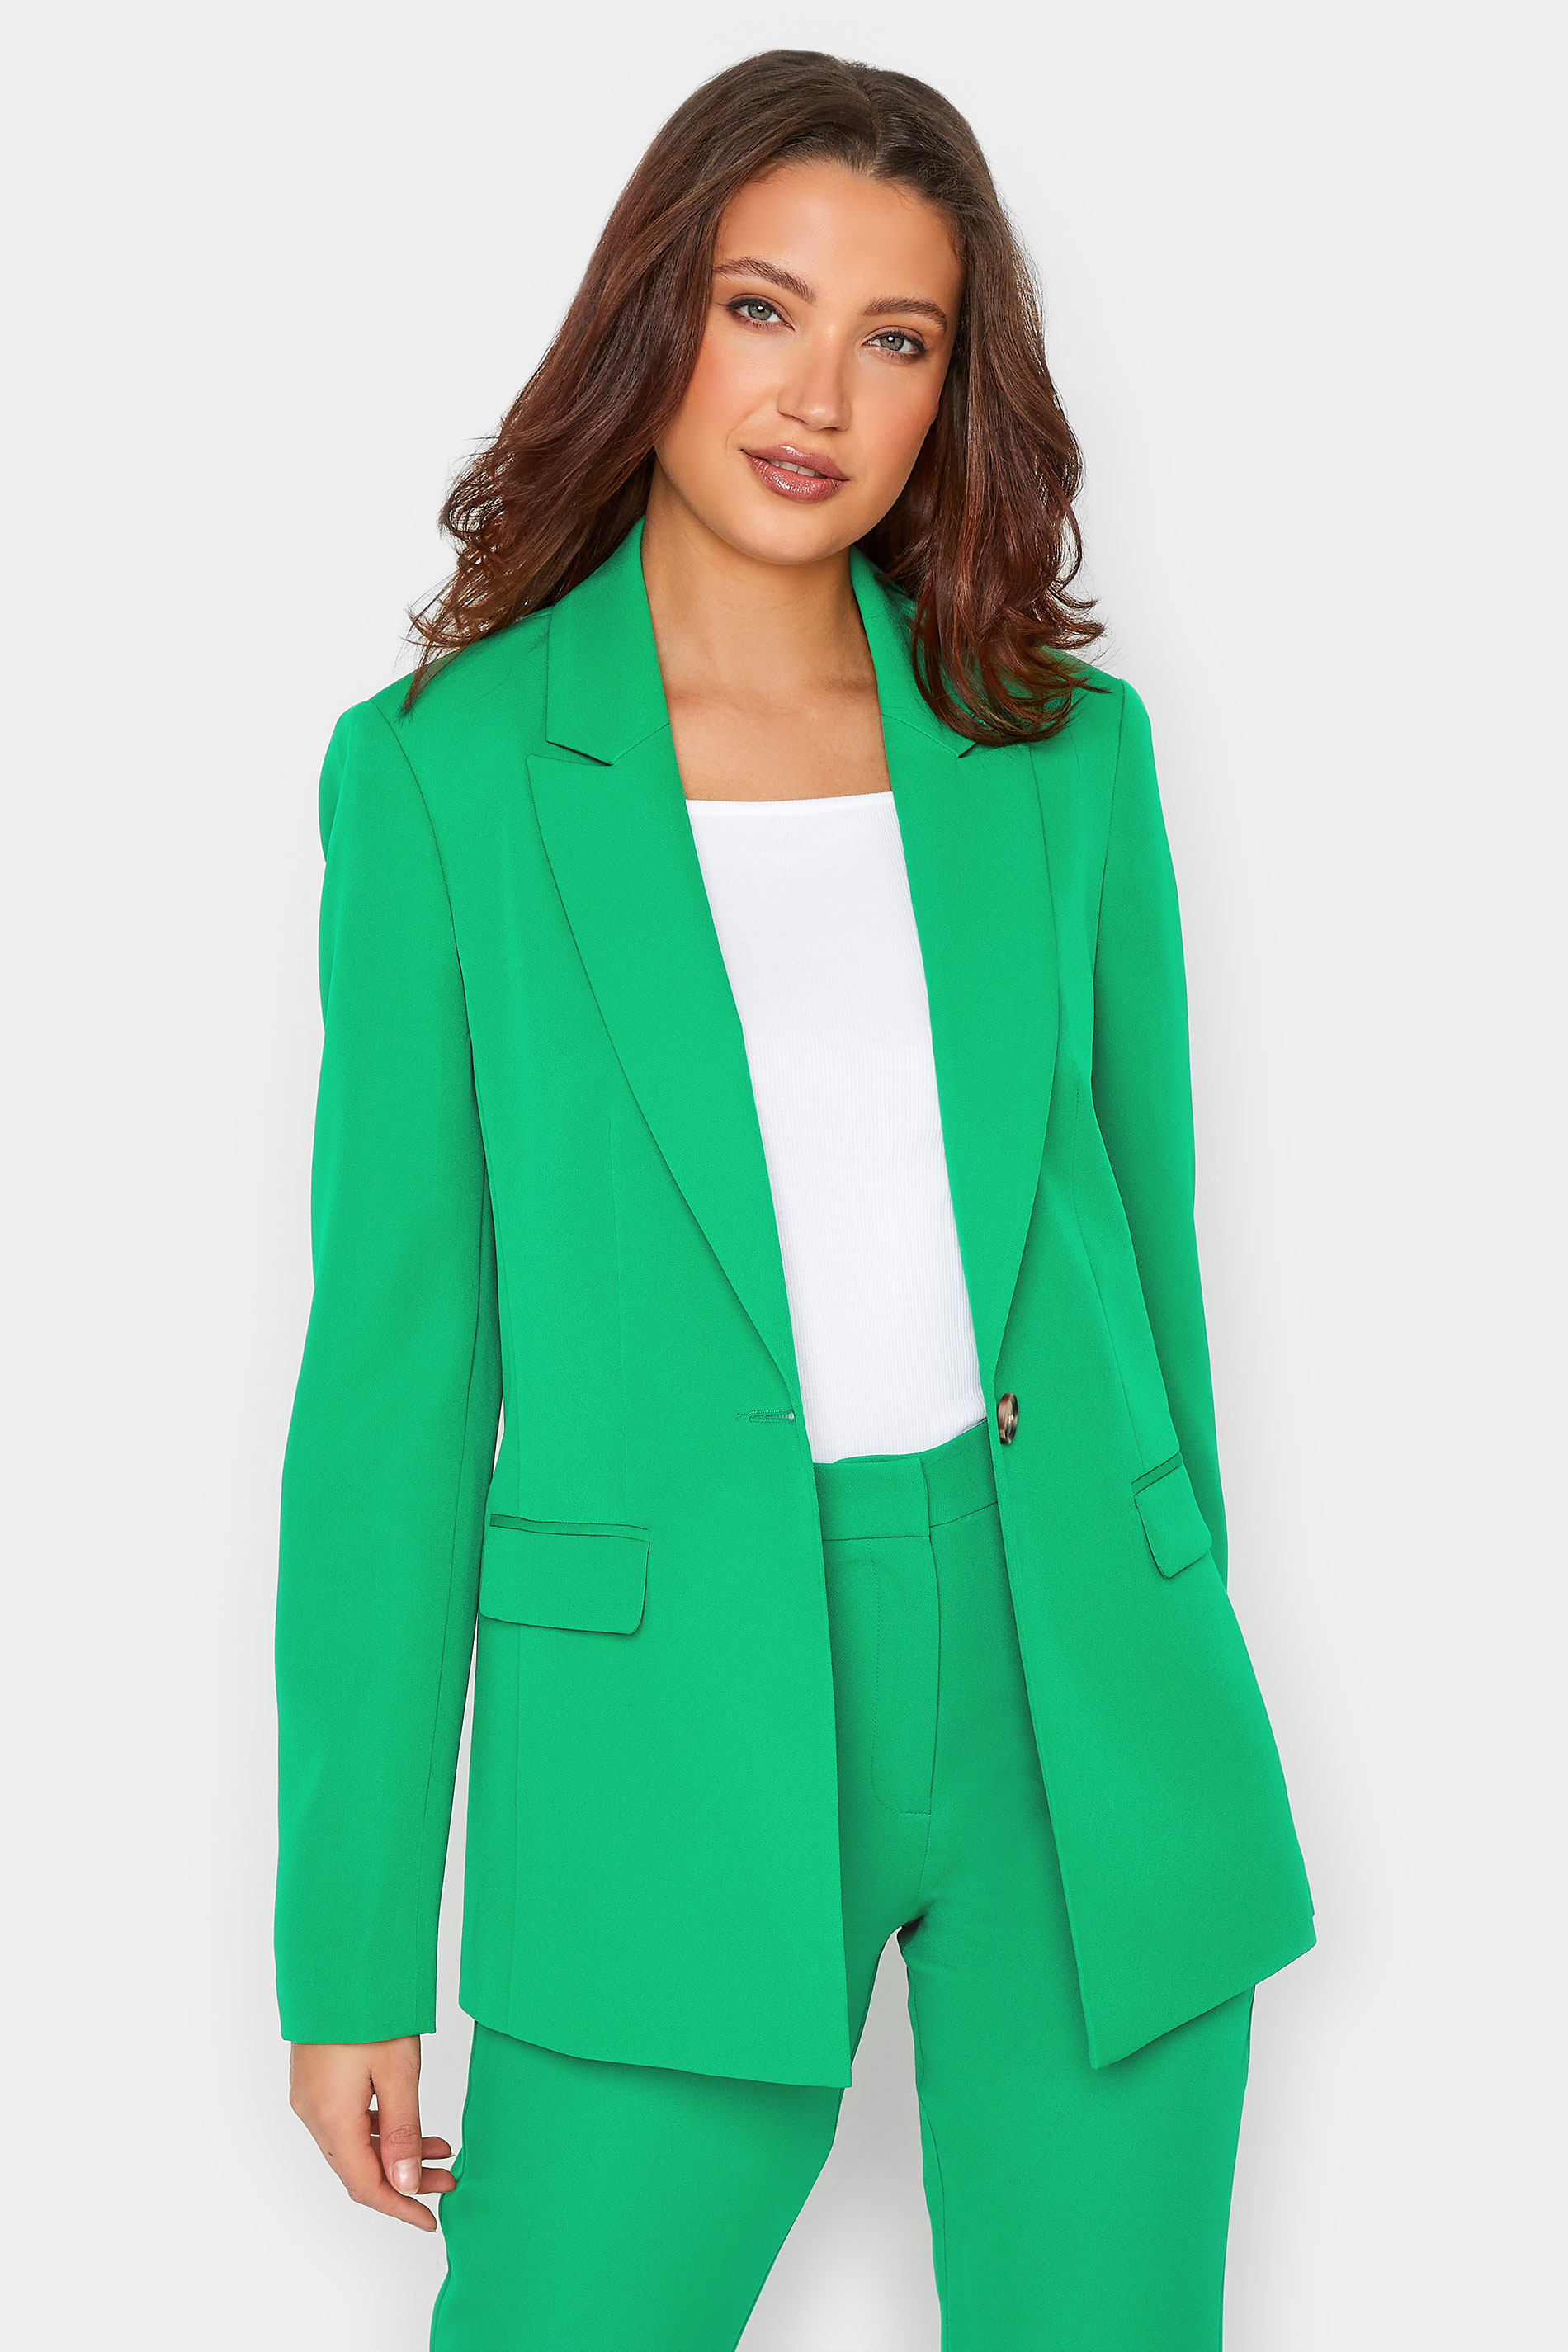 LTS Tall Women's Green Tailored Blazer | Long Tall Sally  1